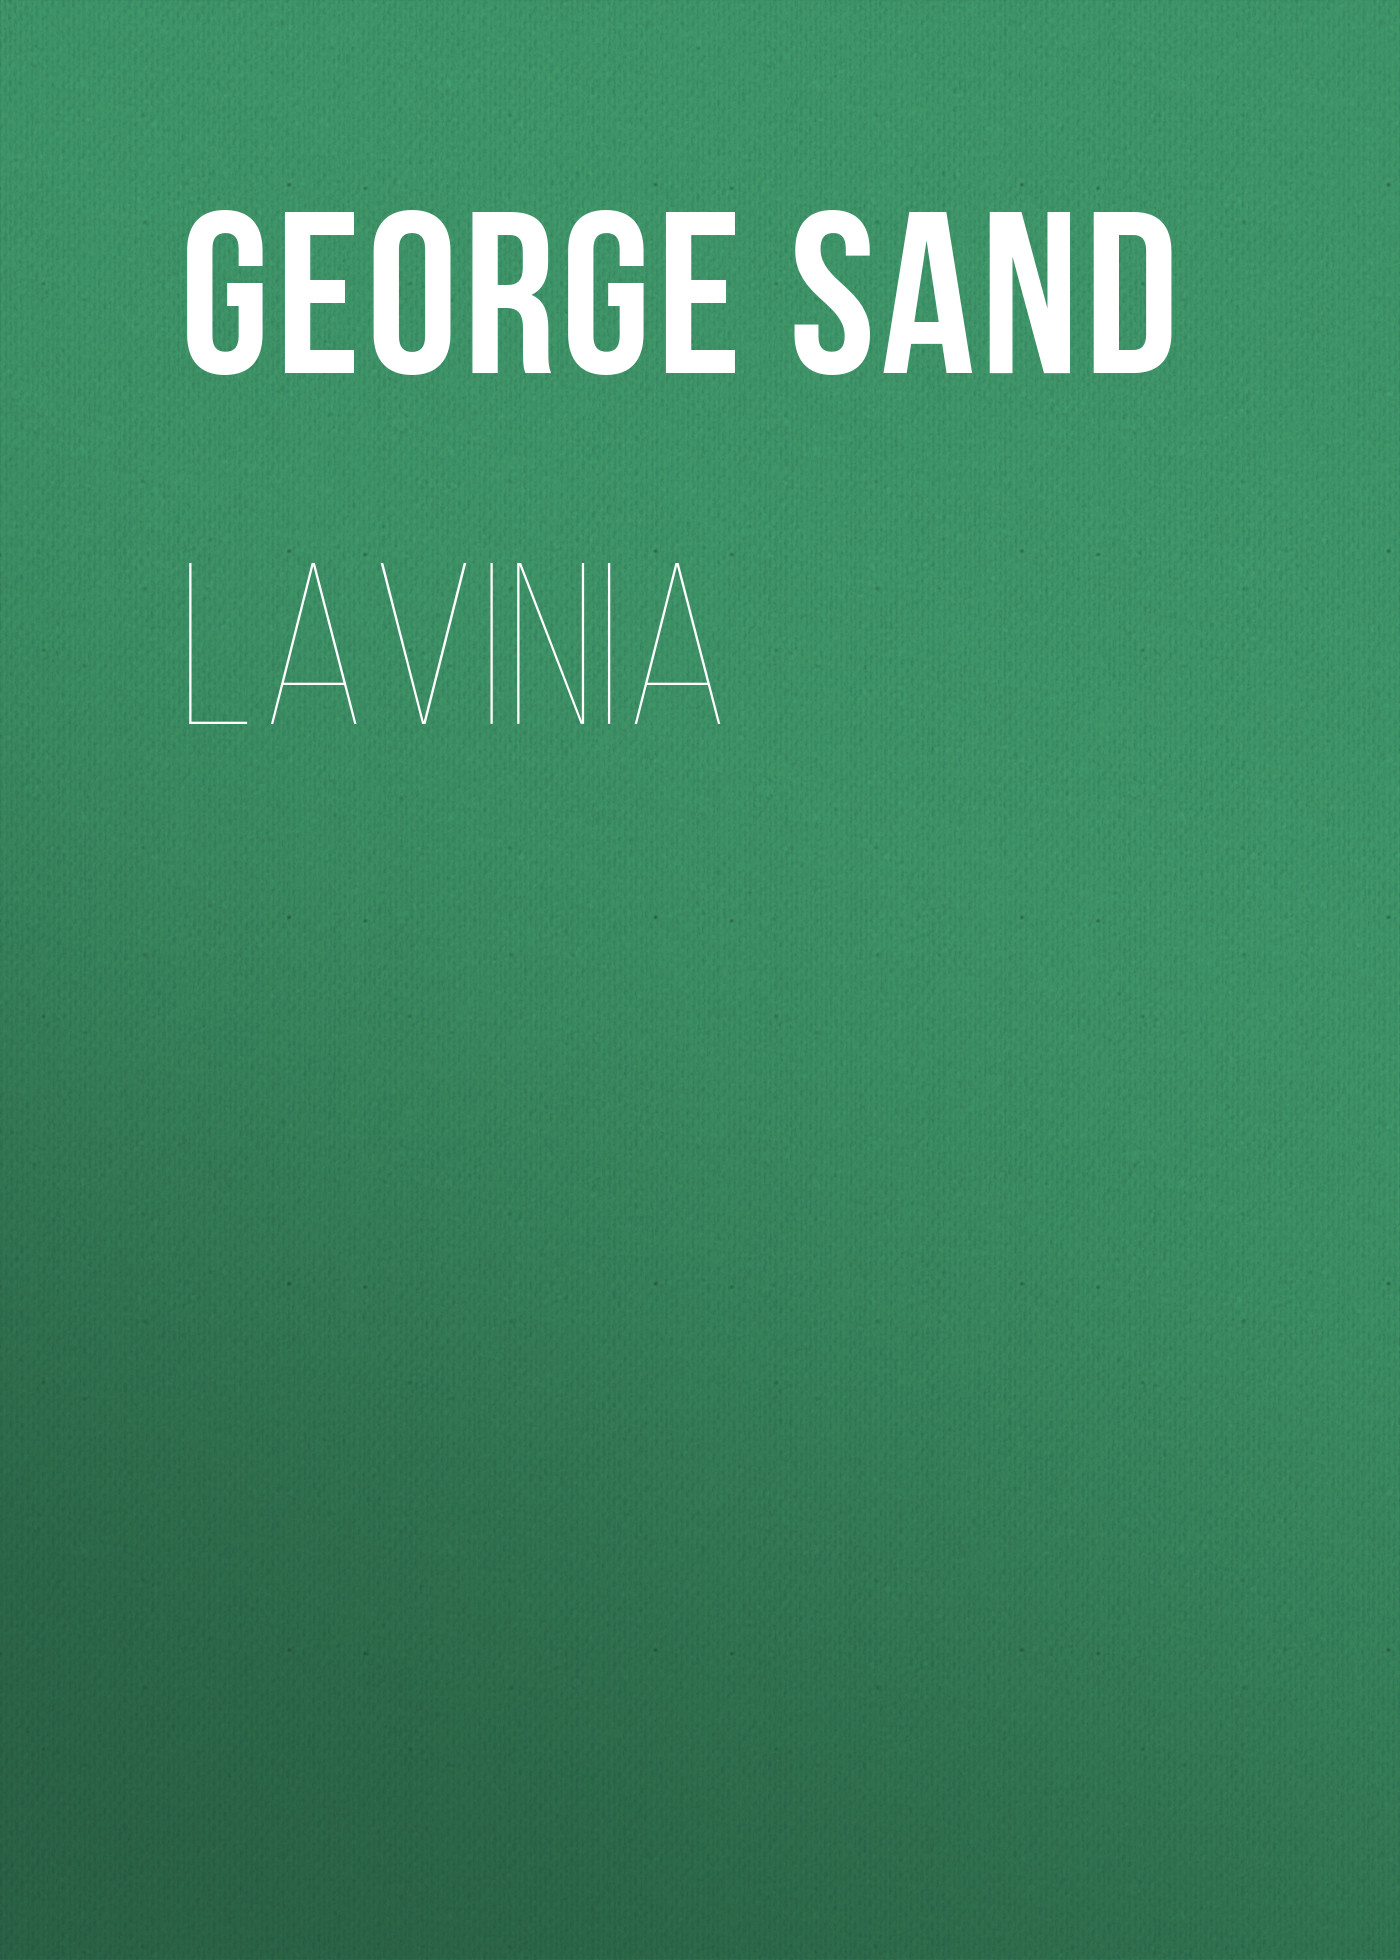 Книга Lavinia из серии , созданная George Sand, может относится к жанру Зарубежная классика. Стоимость электронной книги Lavinia с идентификатором 48631964 составляет 0 руб.